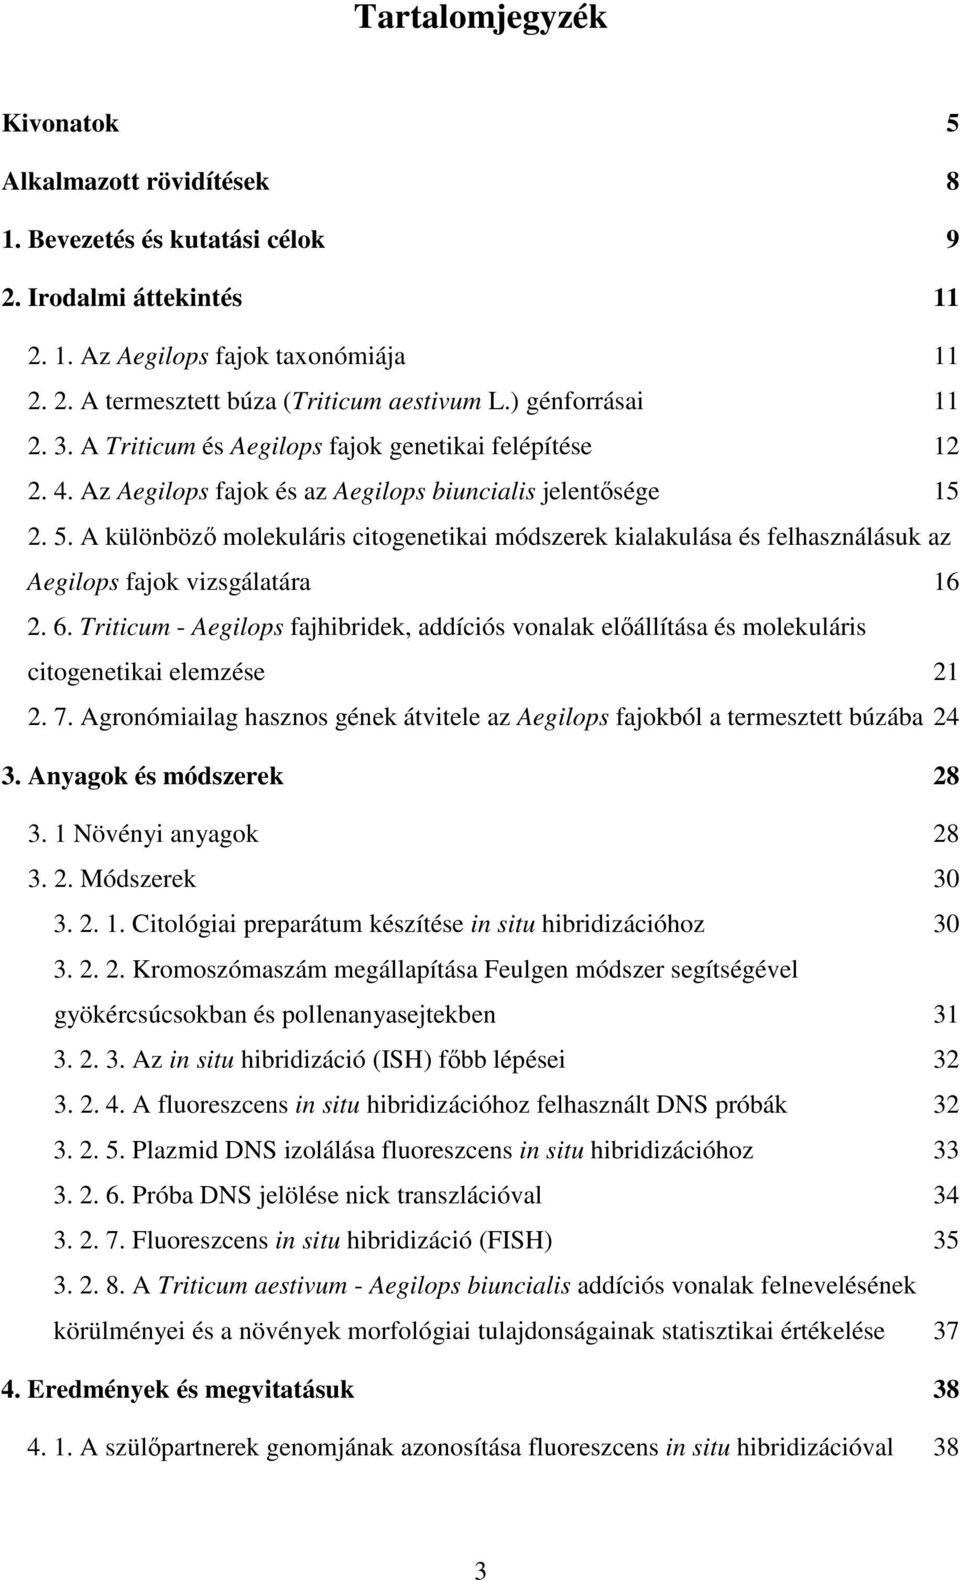 A különböz molekuláris citogenetikai módszerek kialakulása és felhasználásuk az Aegilops fajok vizsgálatára 16 2. 6.